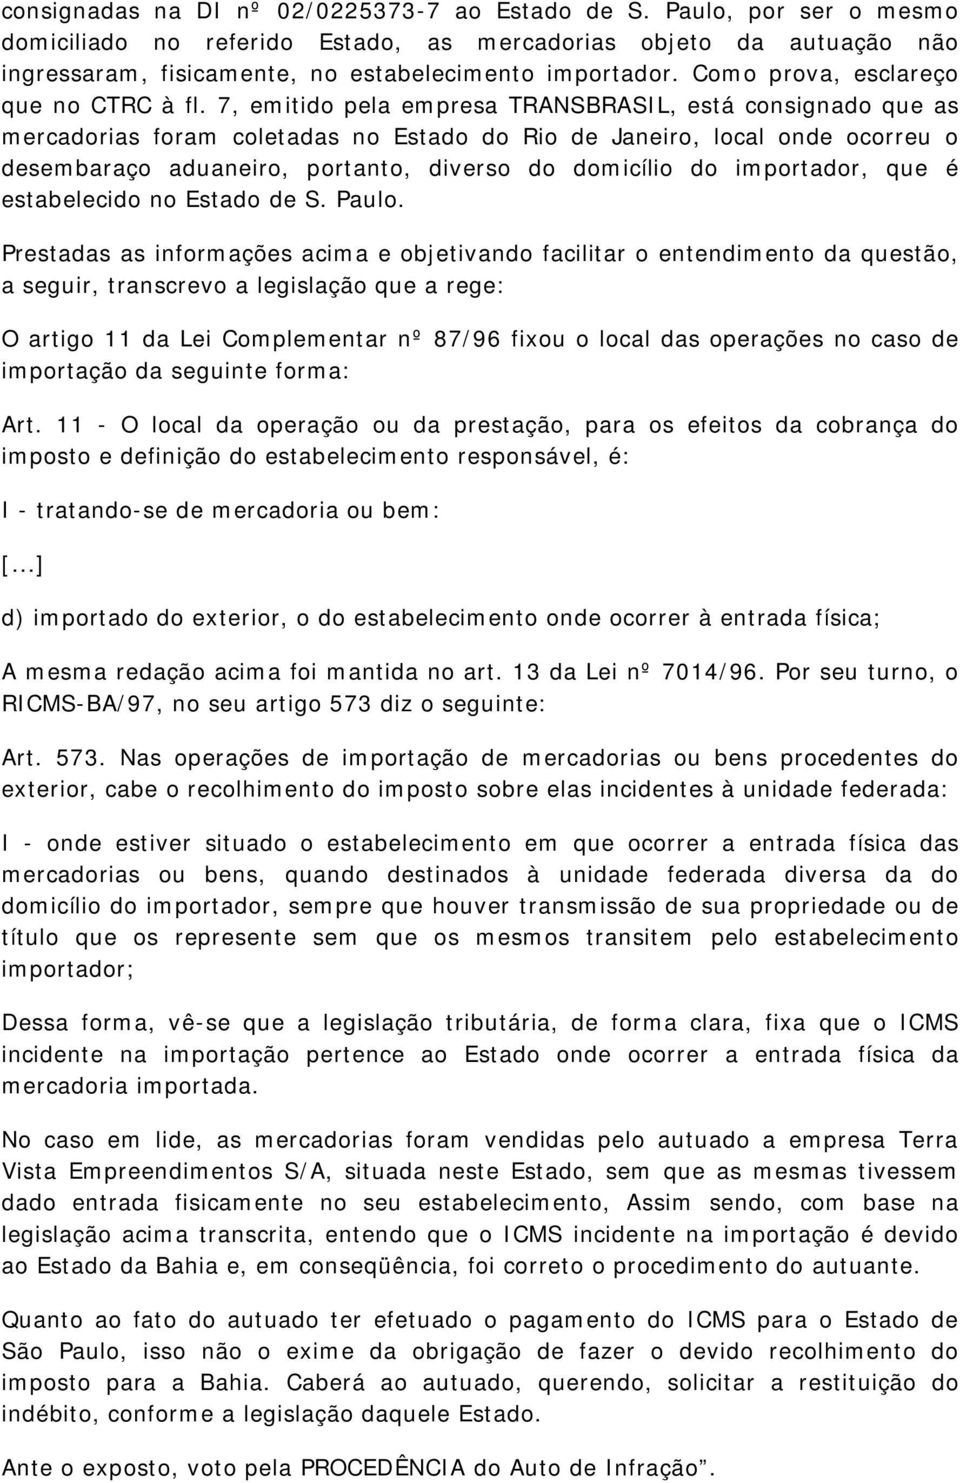 7, emitido pela empresa TRANSBRASIL, está consignado que as mercadorias foram coletadas no Estado do Rio de Janeiro, local onde ocorreu o desembaraço aduaneiro, portanto, diverso do domicílio do